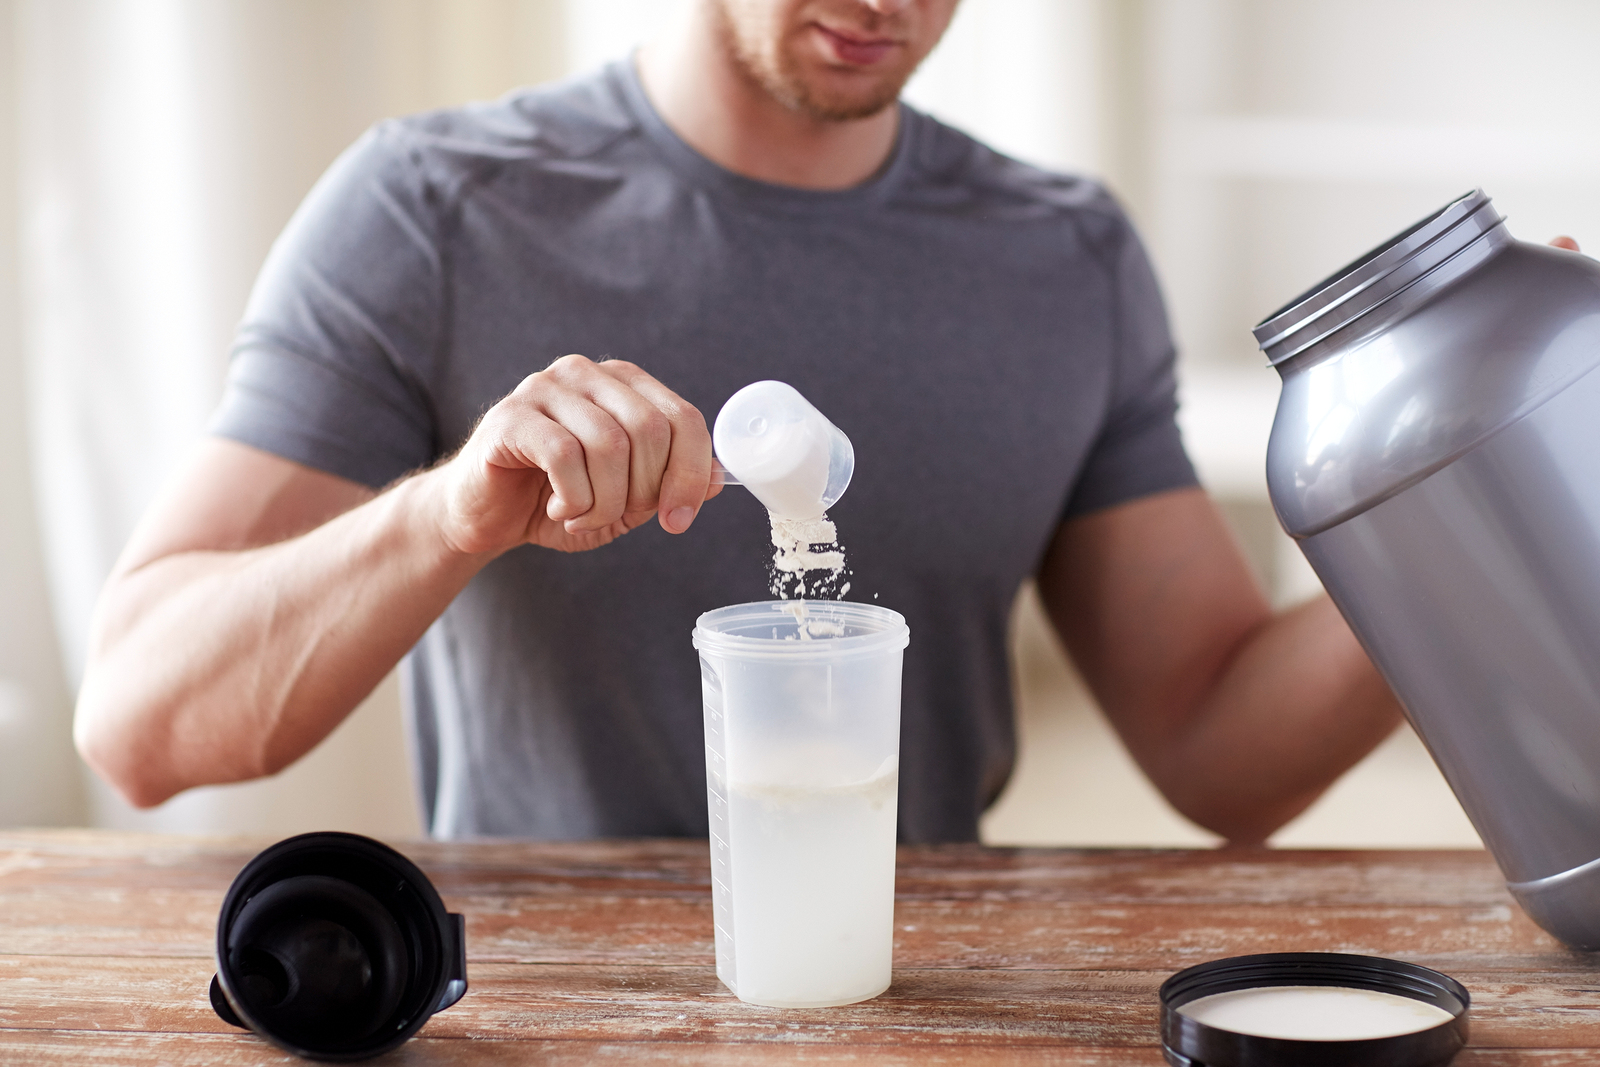 Stock image of man making protein shake